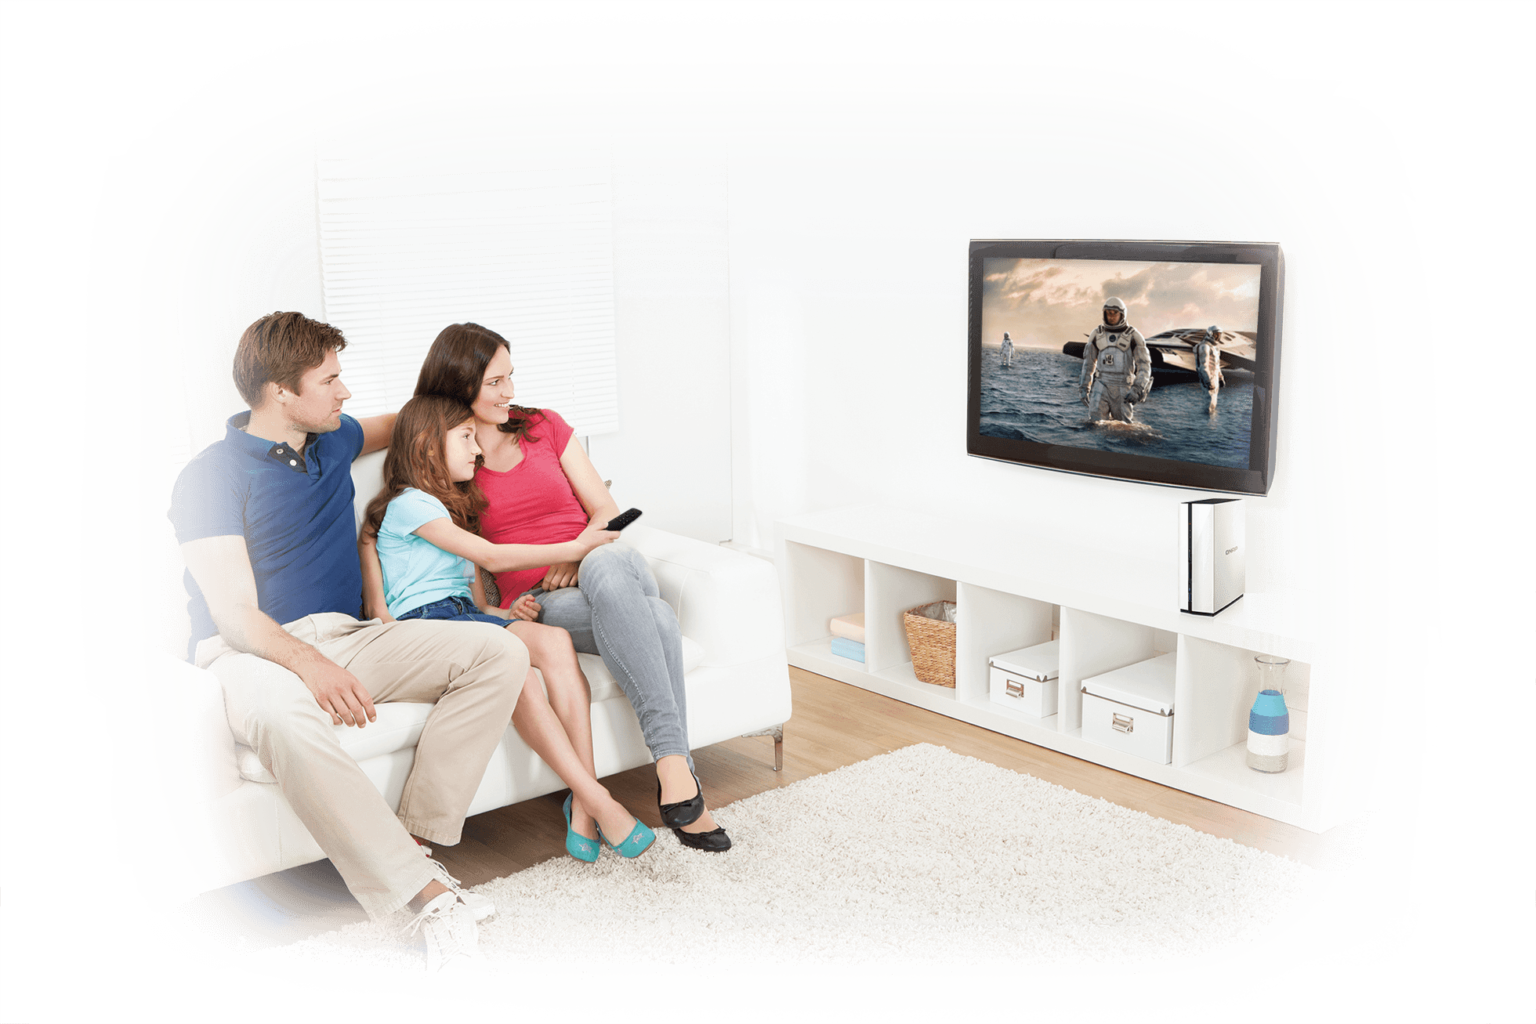 Телевизор. Семья у телевизора. Семья смотрит телевизор. Человек перед телевизором. Семья смотрит тв